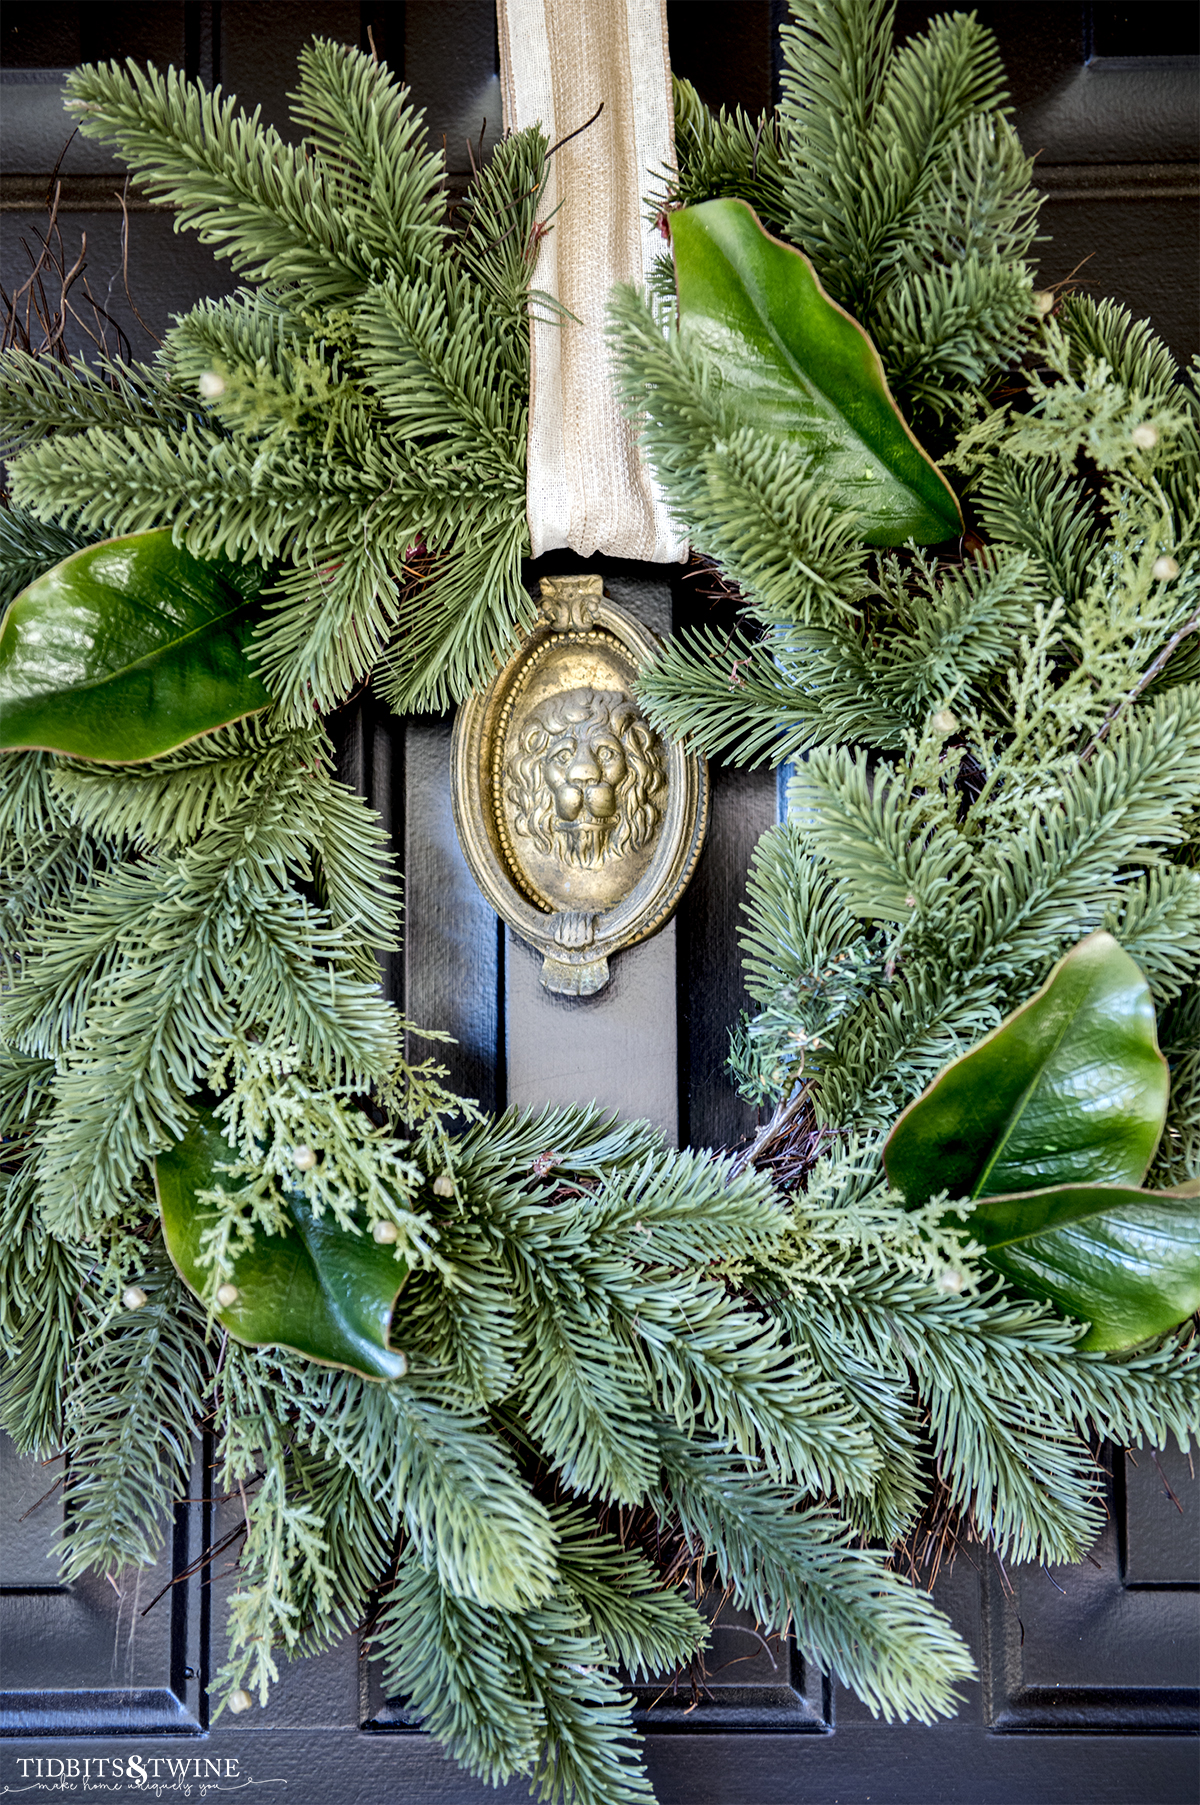 evergreen wreath on black front door with brass lionhead door knocker in the center